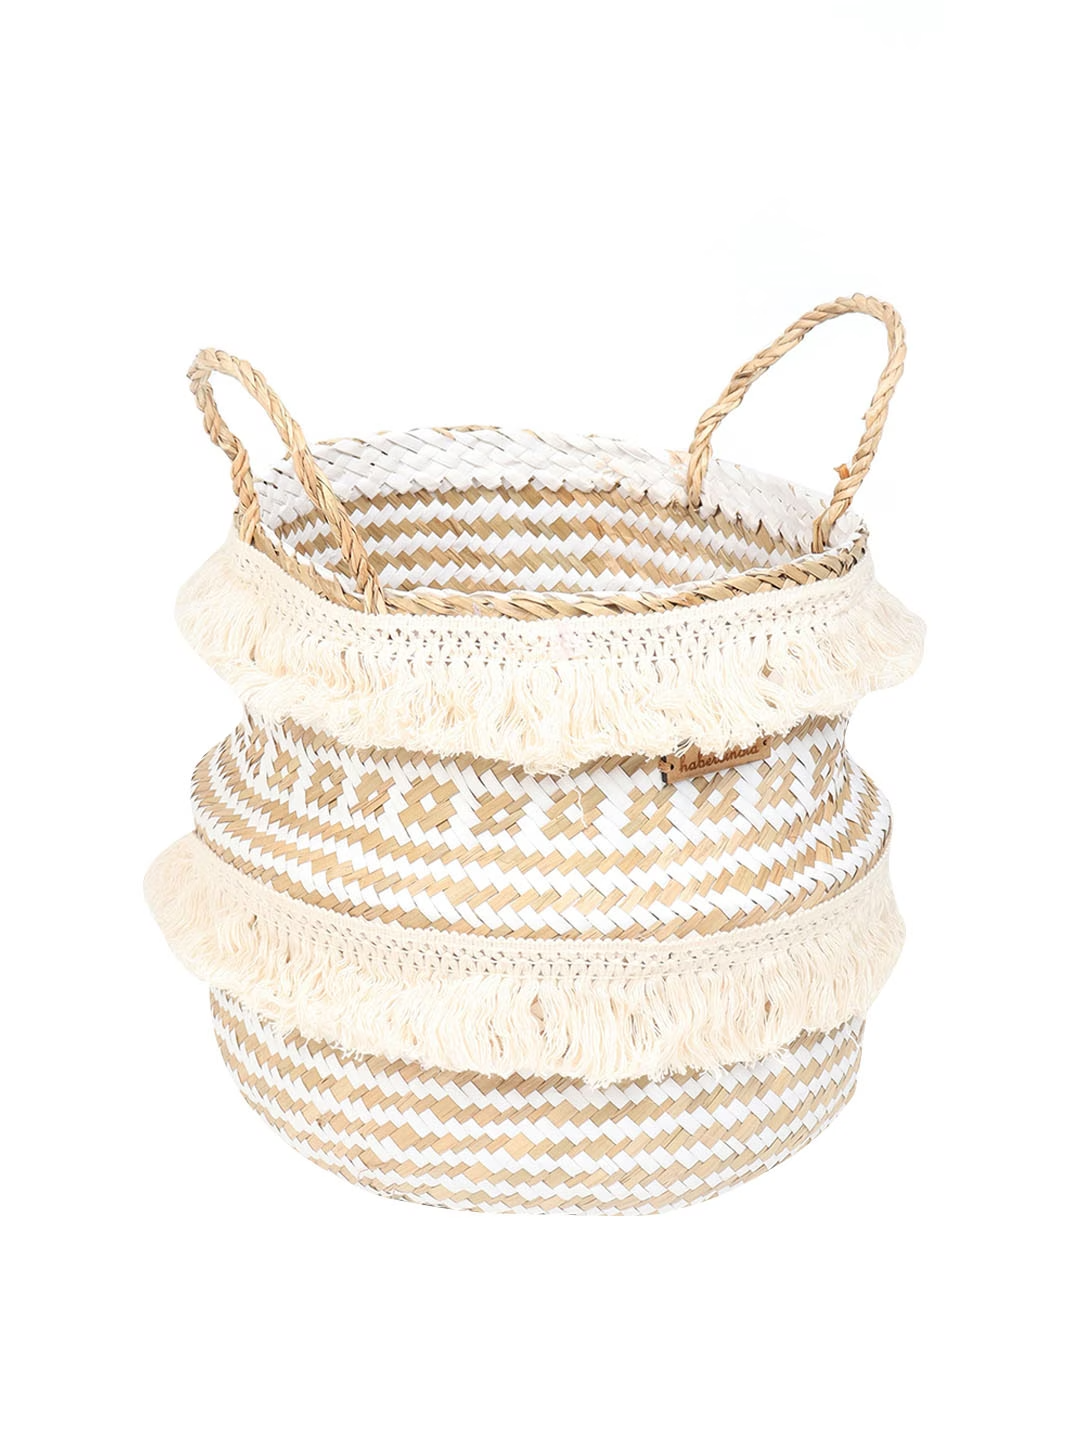 White & Beige Seagrass Belly Plant Medium Storage Basket with Tassels